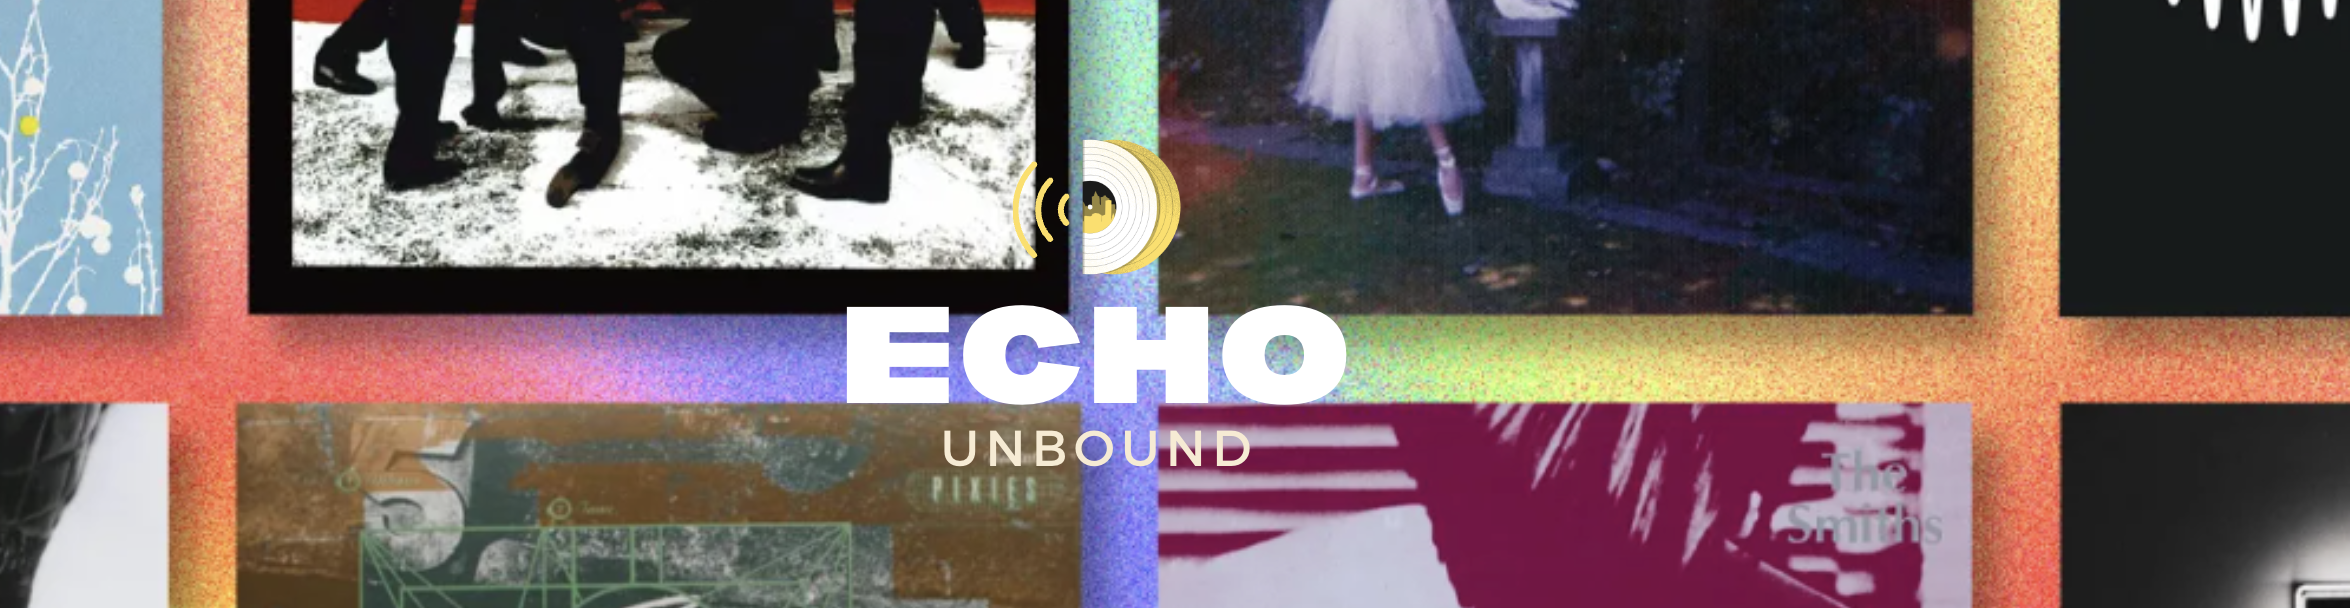 Echo Unbound Magazine